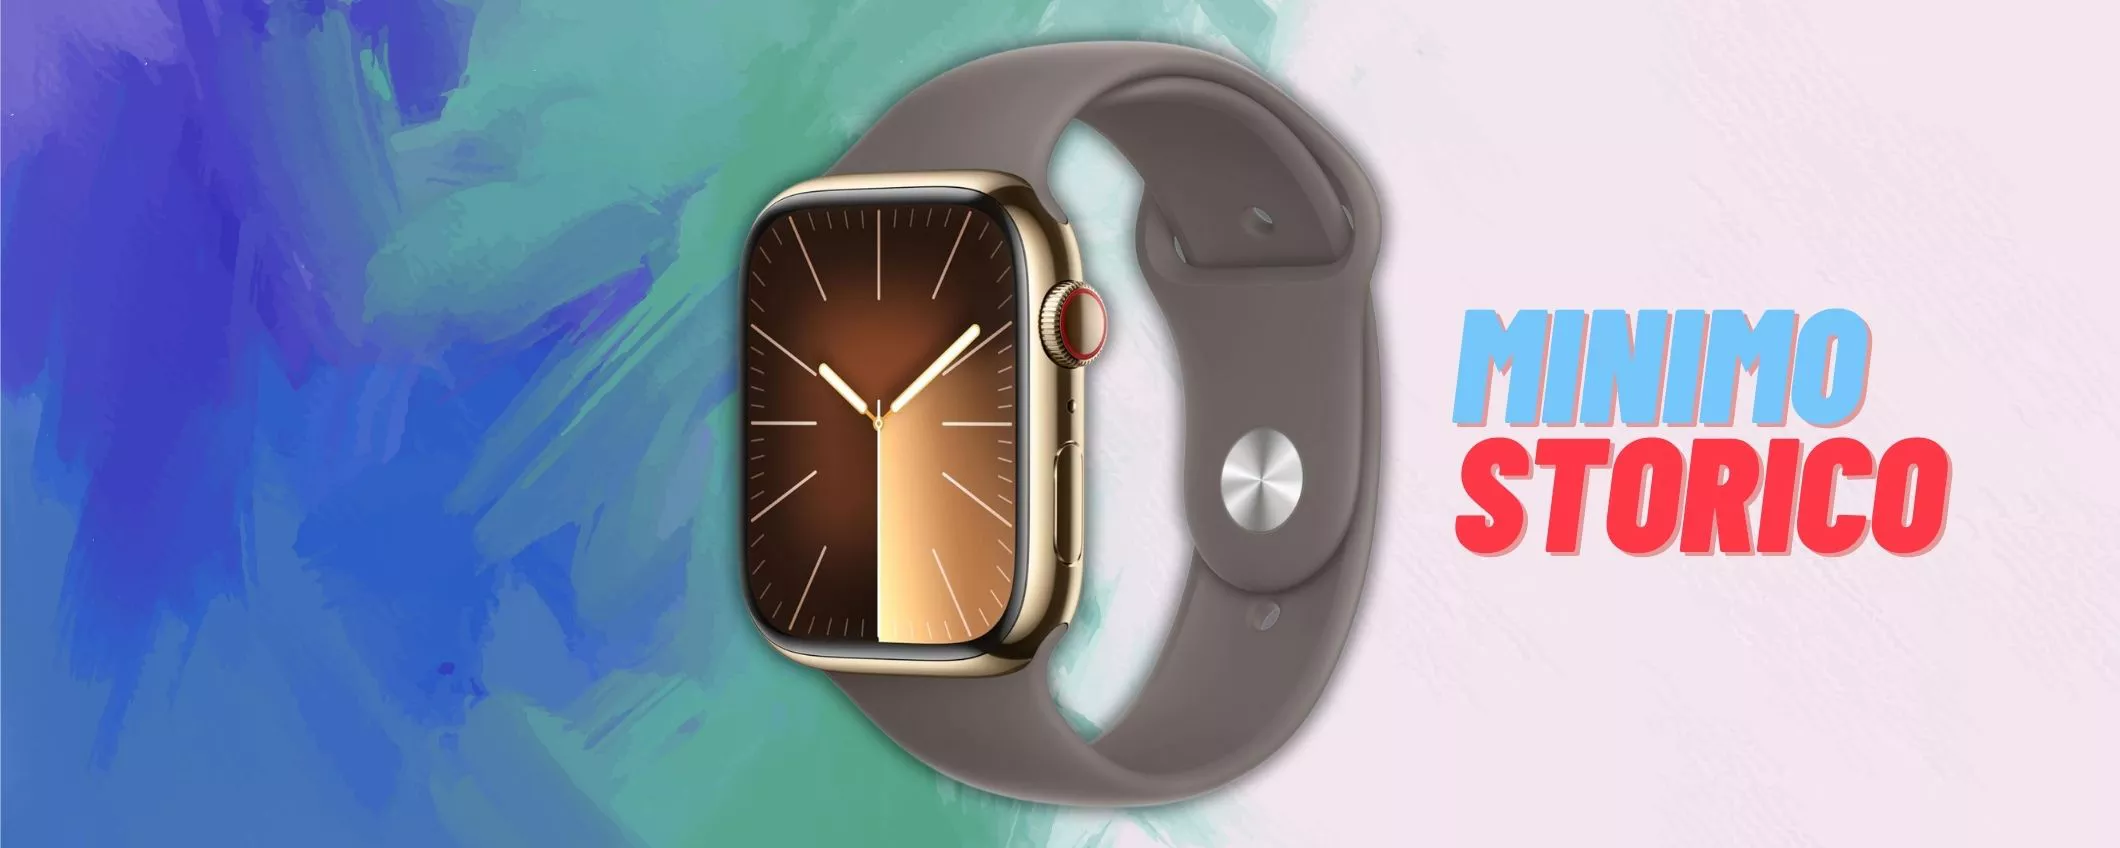 Apple Watch Series 9: il prezzo CROLLA al MINIMO STORICO (761€)